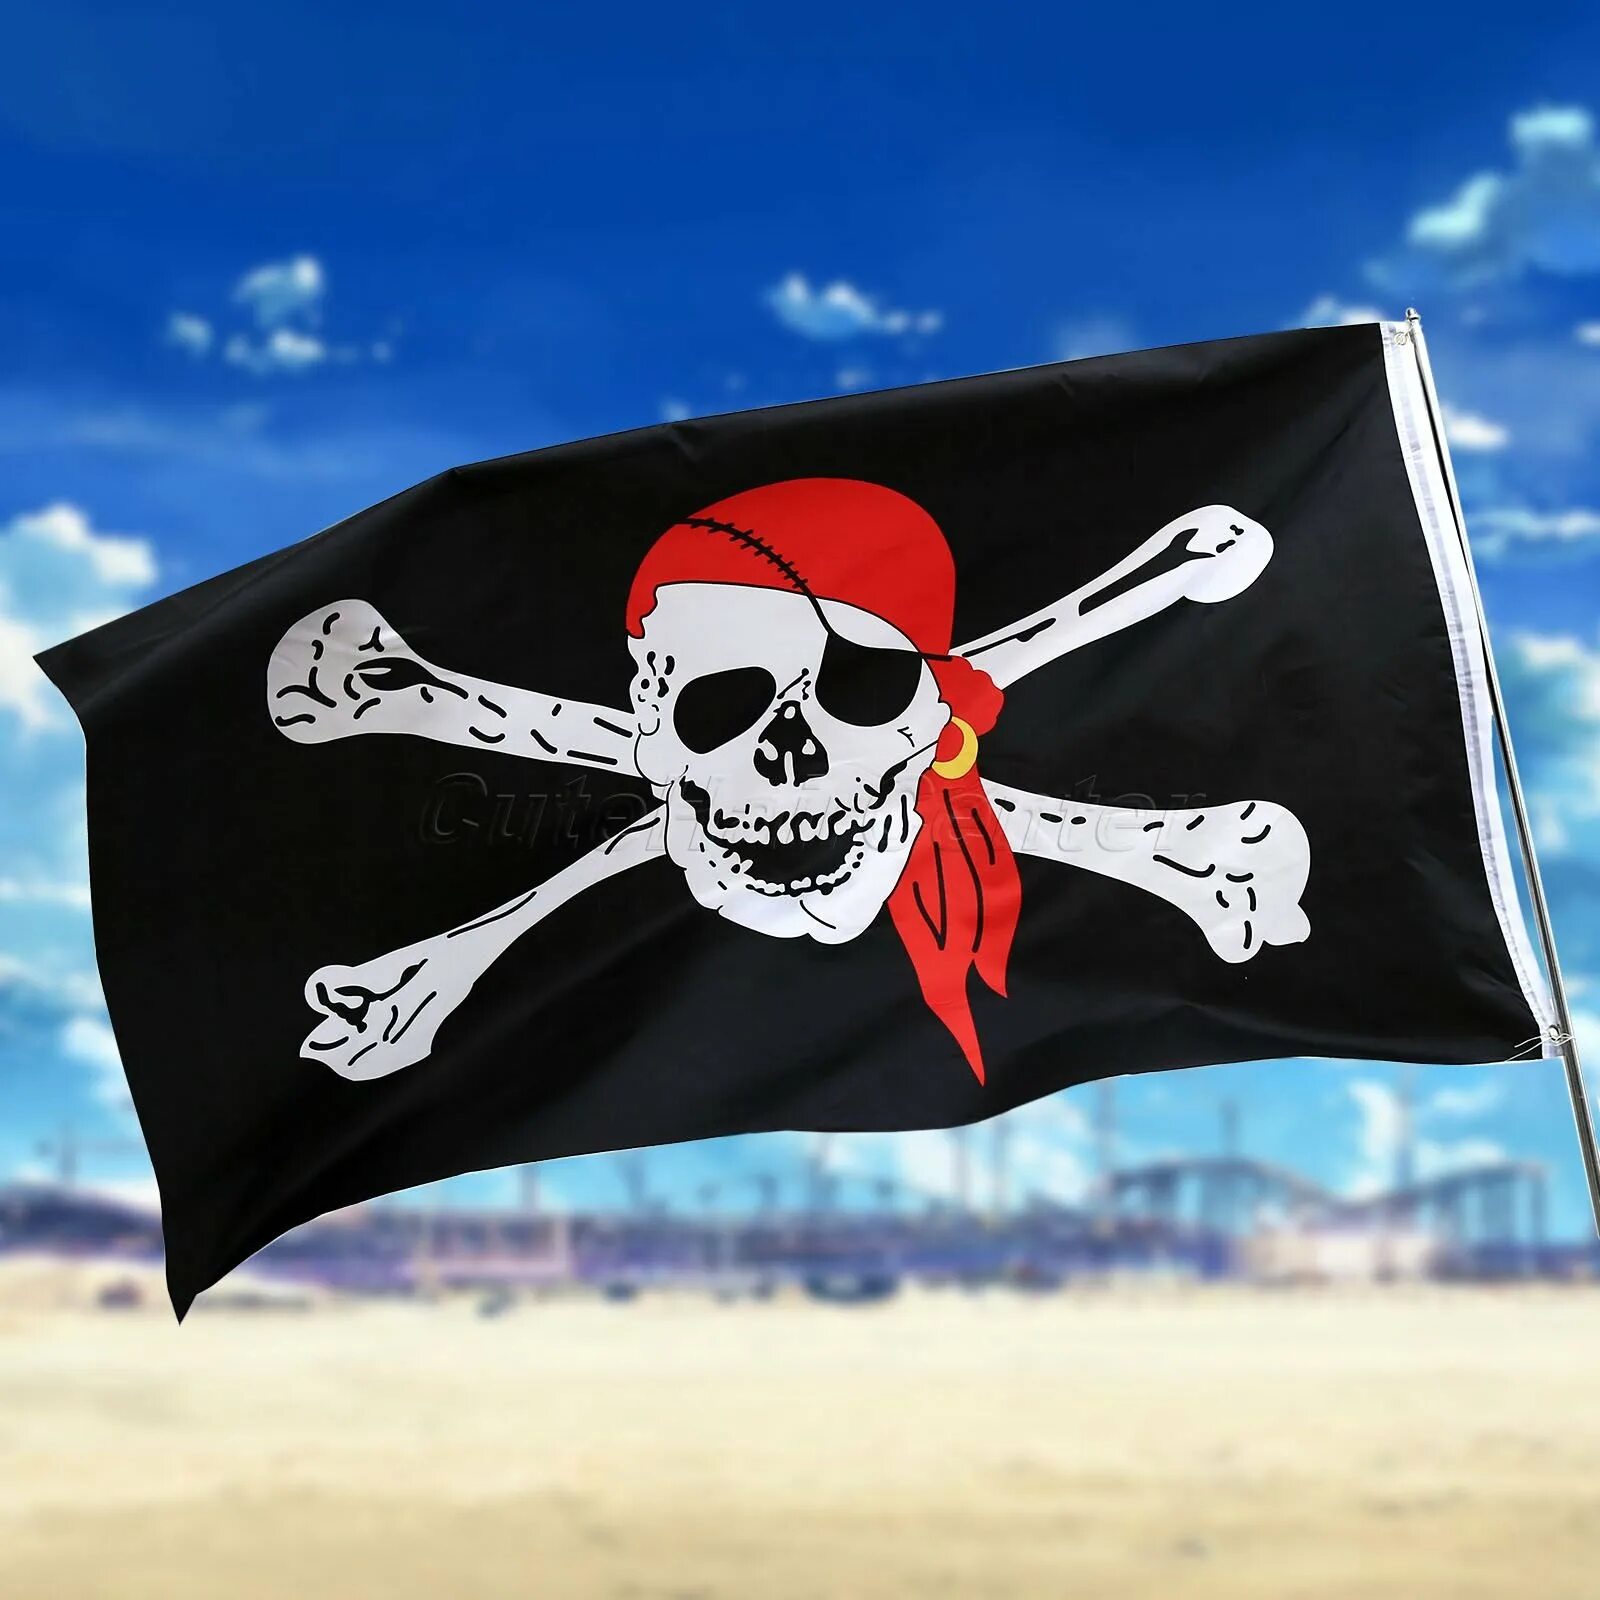 Веселый роджер. Весёлый Роджер флаг. Пиратский флаг веселый Роджер. Весёлый Роджер у пиратов. Пиратский флаг "весёлый Роджер" размер.